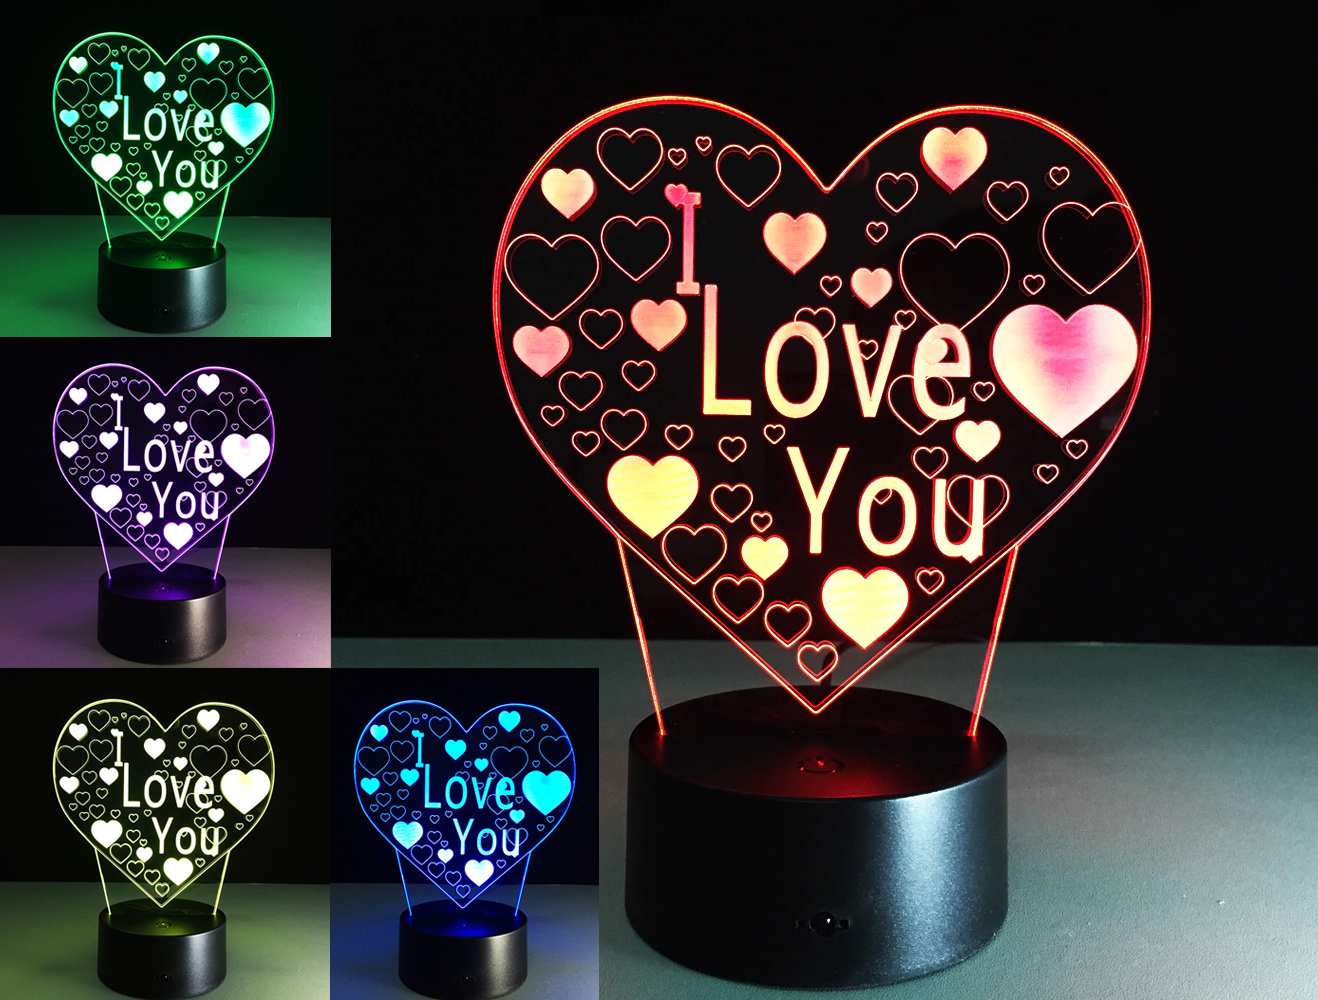 3D LED noční lampa "I LOVE YOU" od domeshop.cz